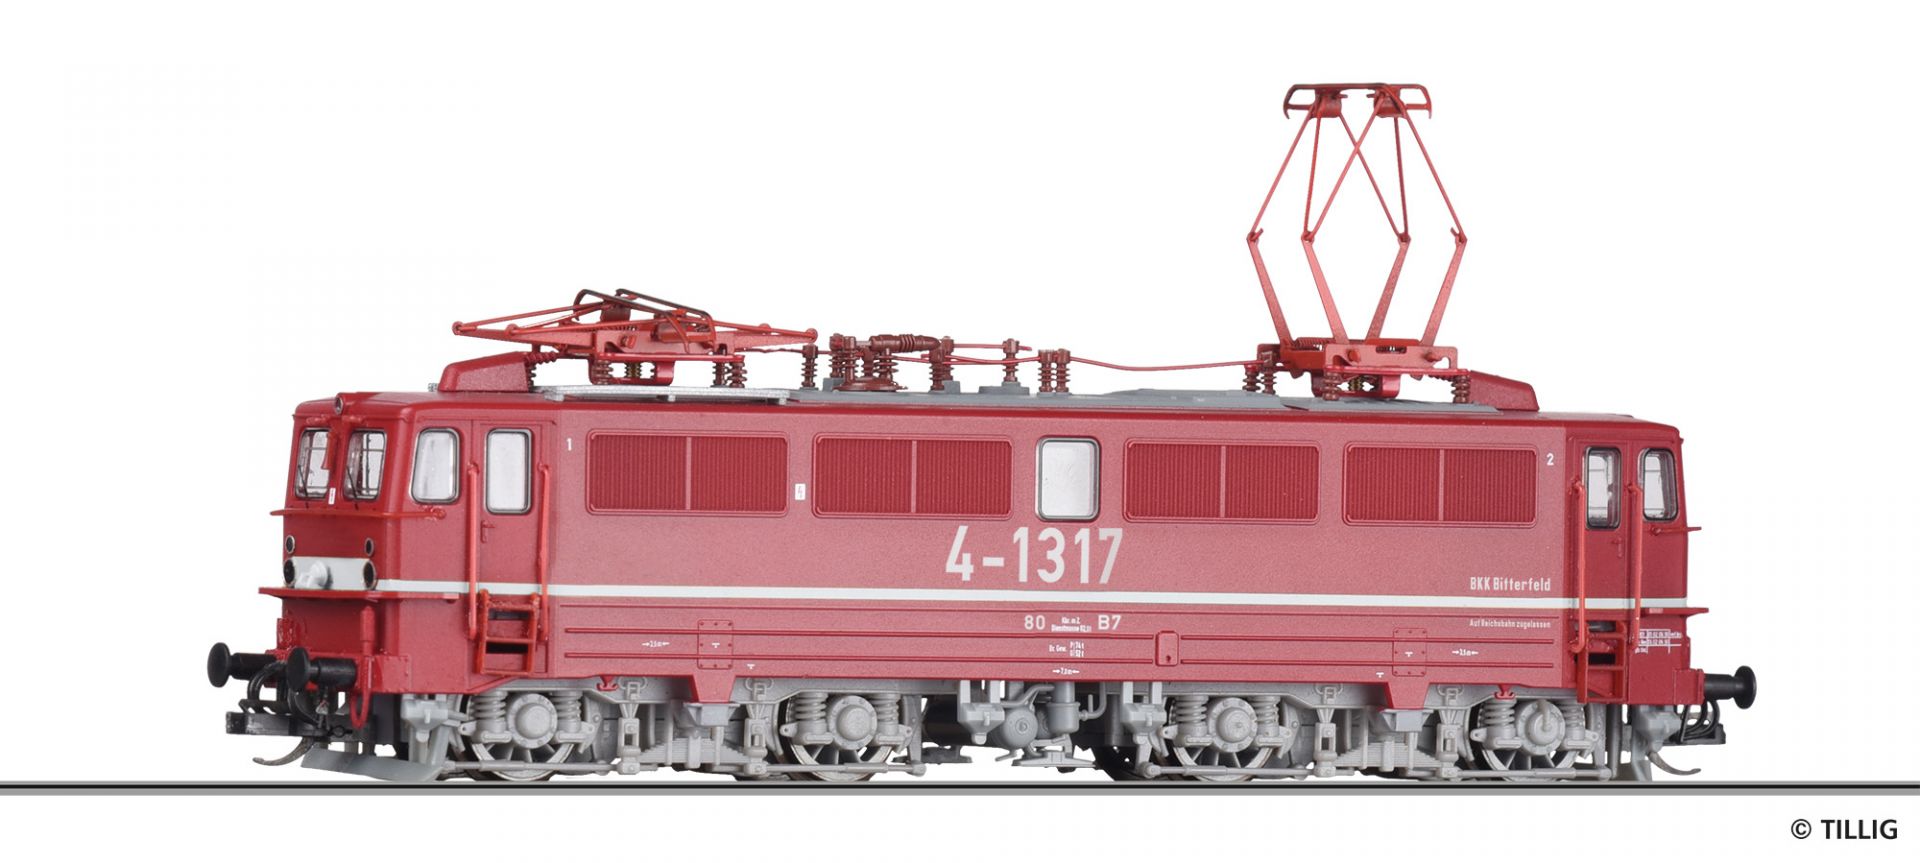 502272 | Electric locomotive BKK Bitterfeld